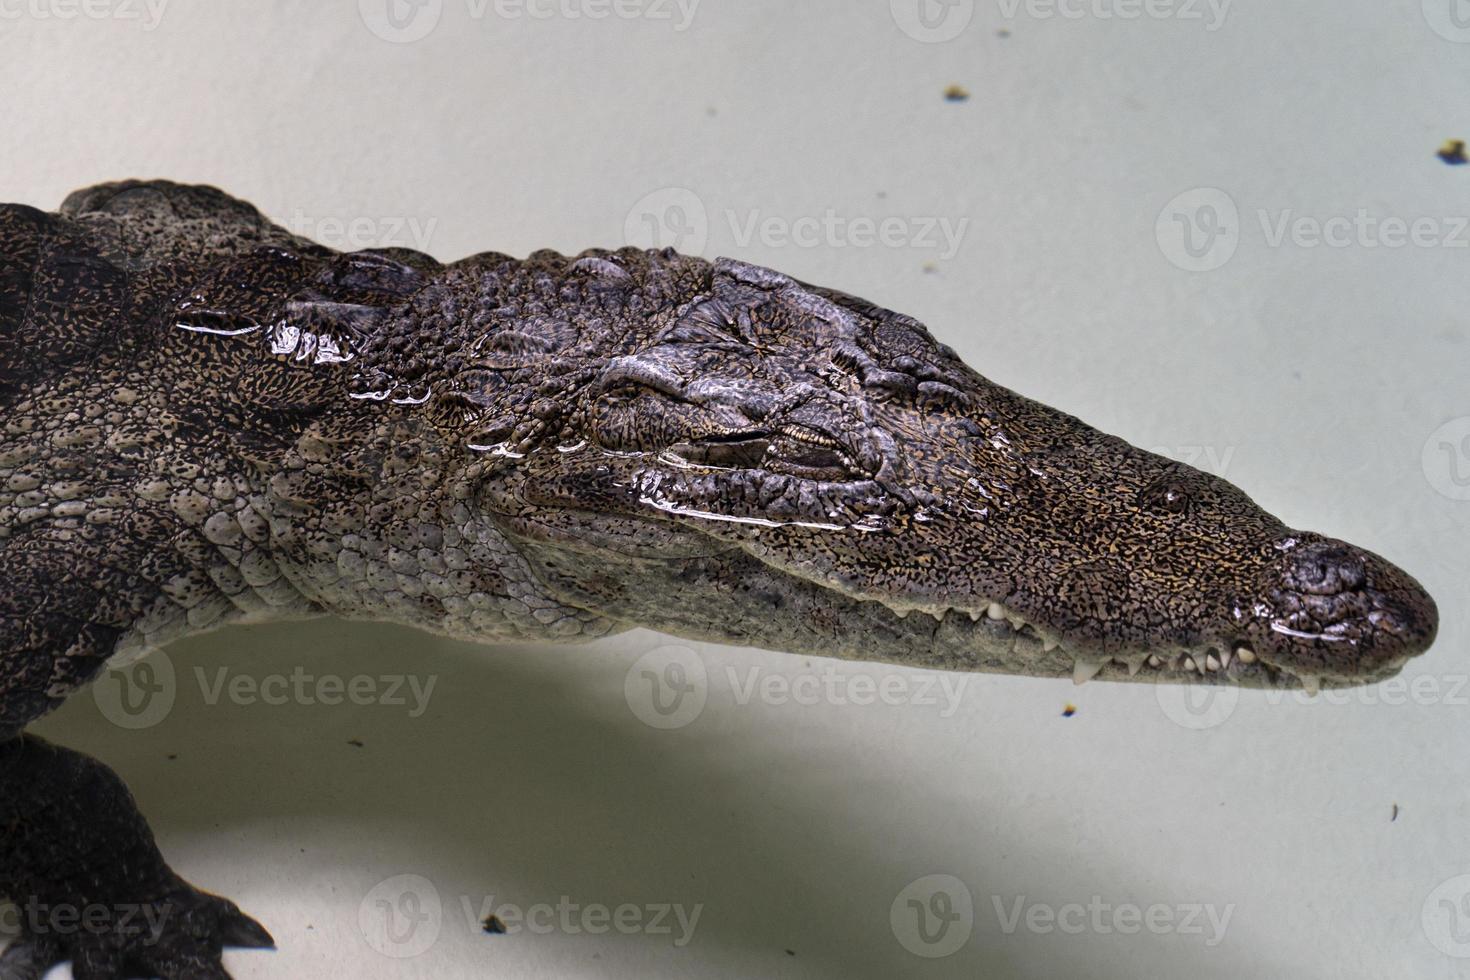 West-Afrikaanse krokodil foto